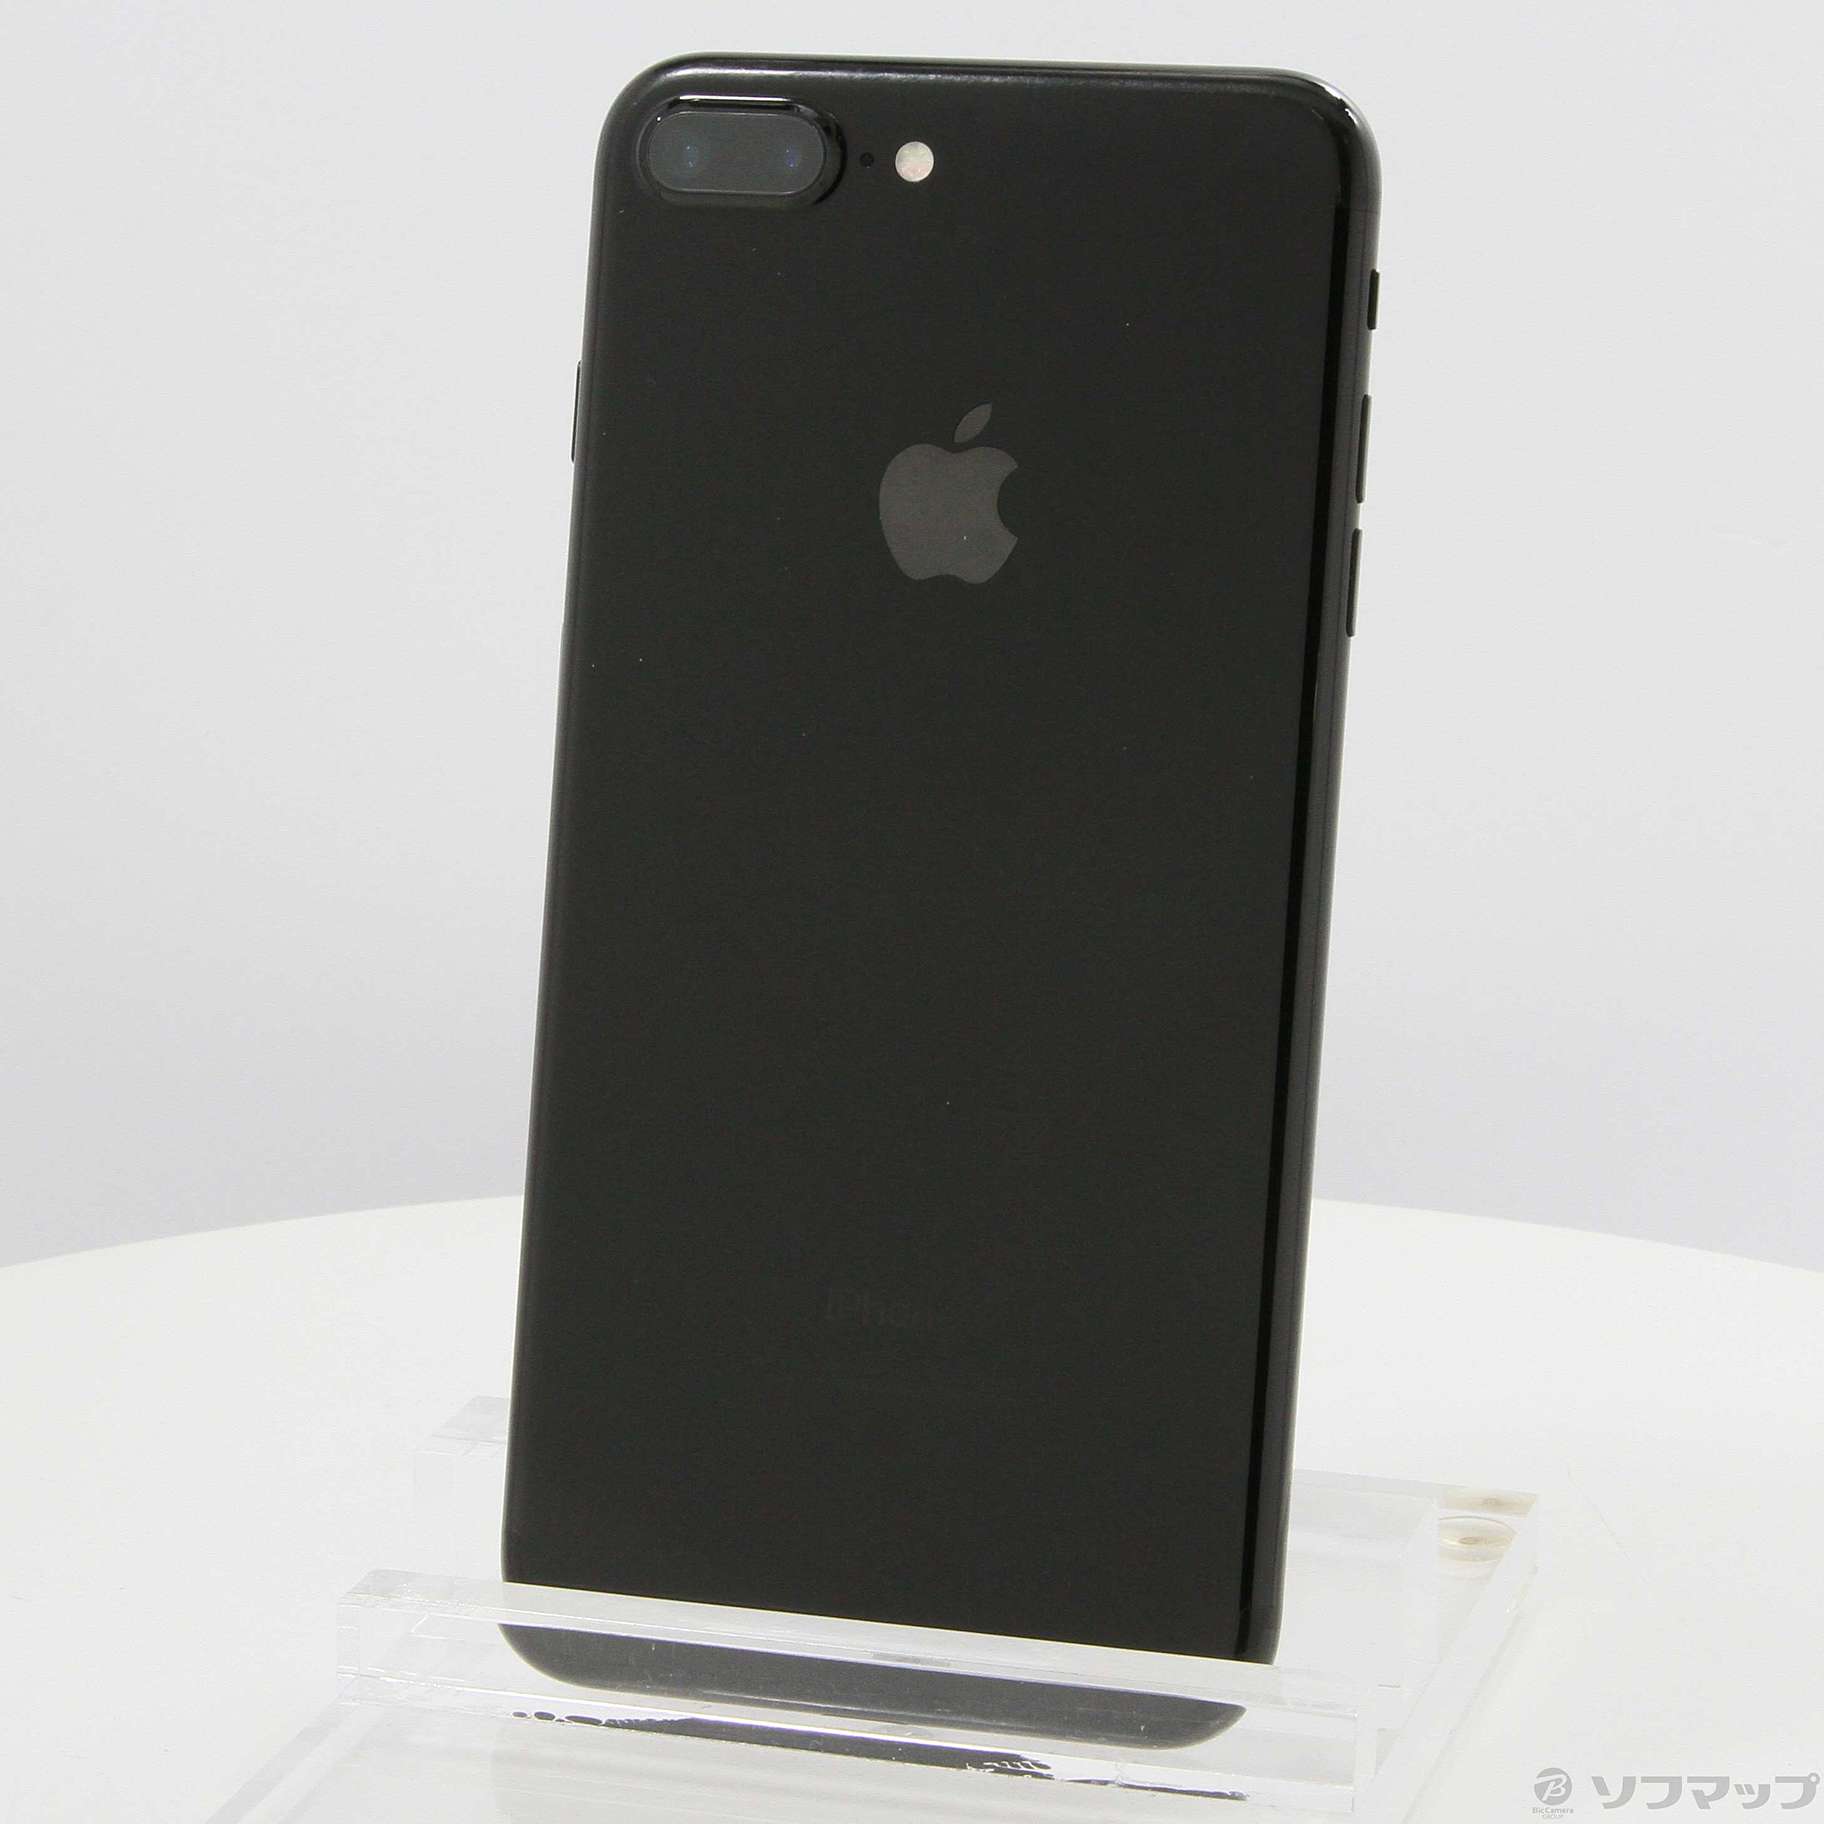 【スマホ】Apple iPhone7 128GB JetBlack SIMフリー